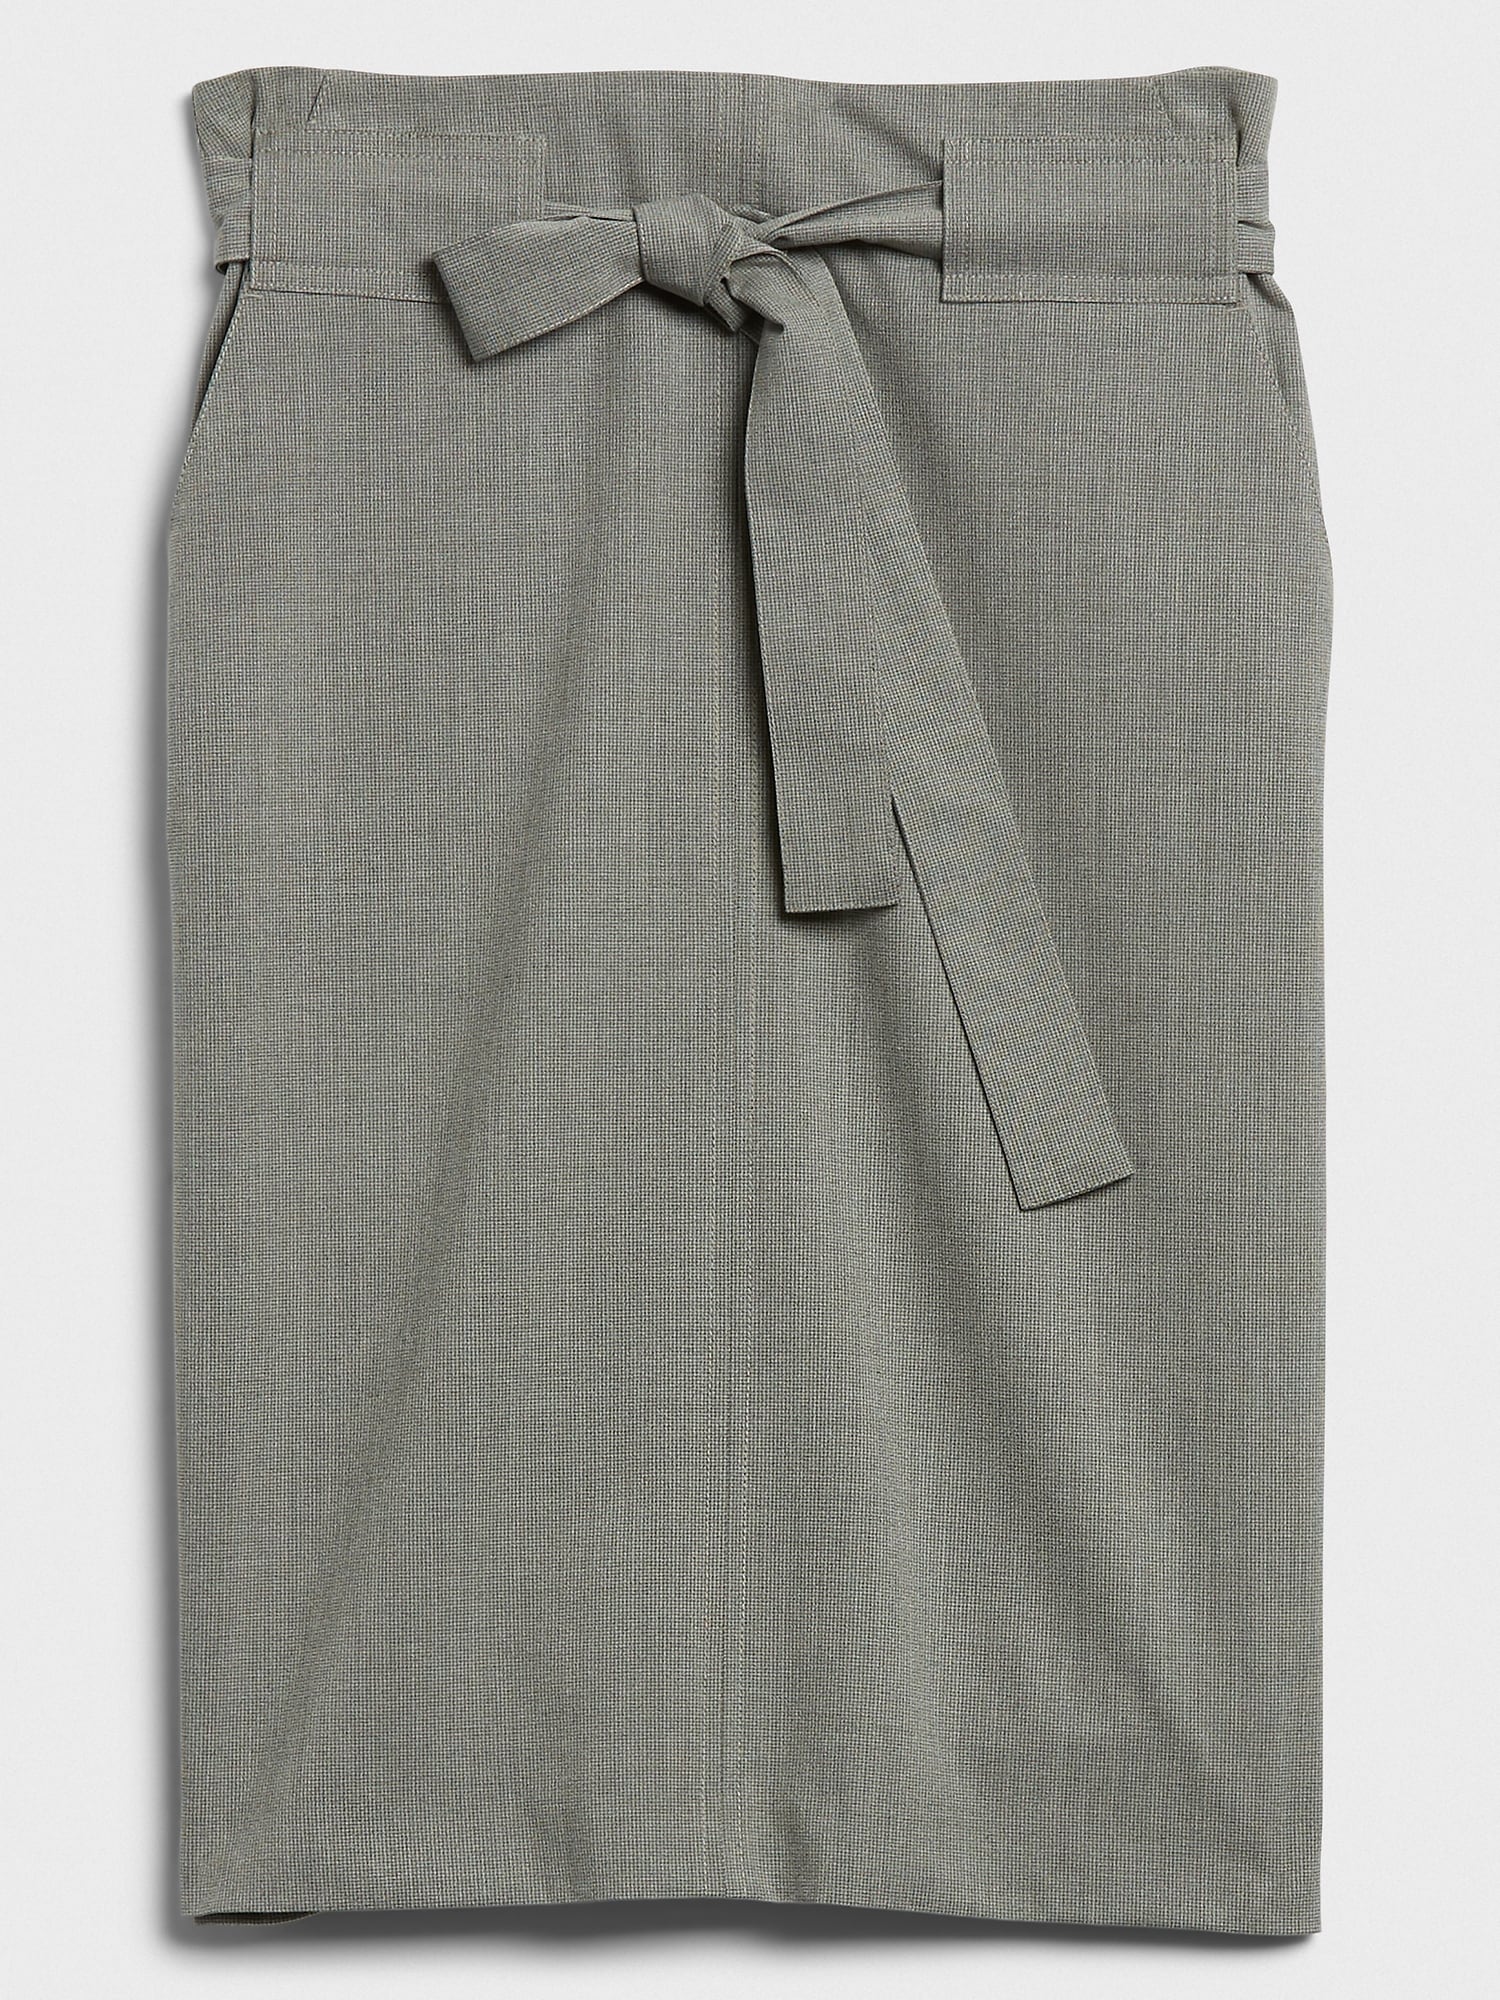 Tie-Waist Pencil Skirt